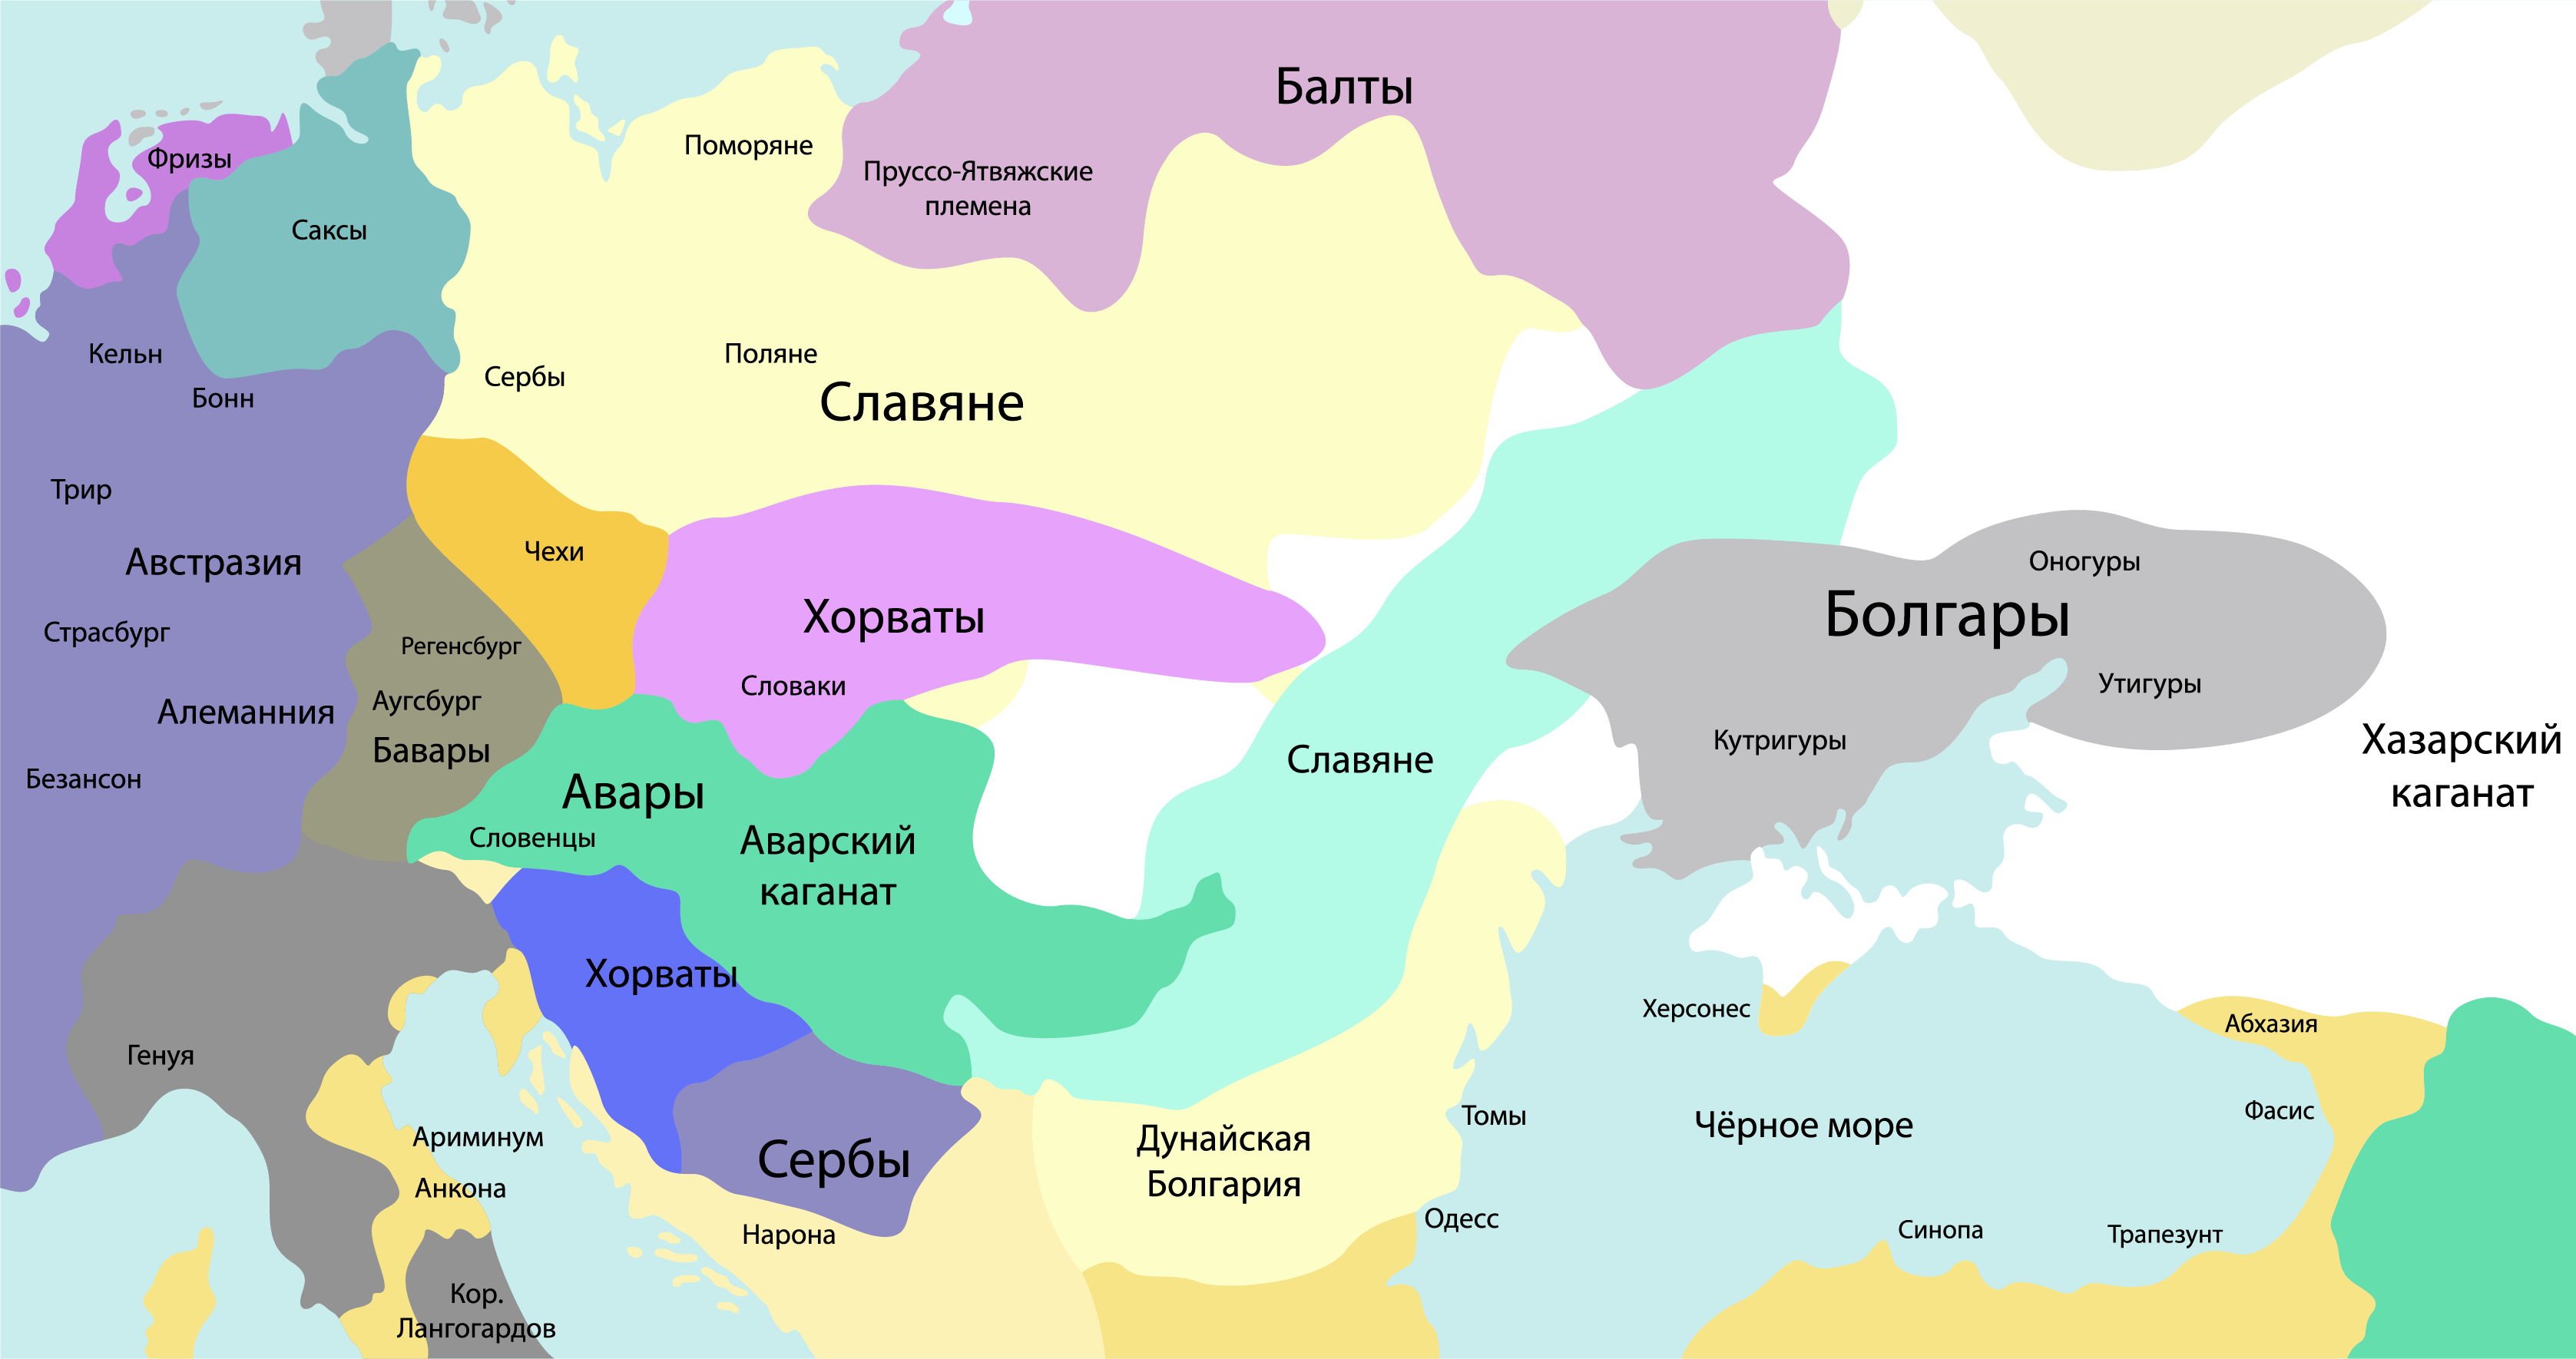 Карта 1. Народы Центральной и Восточной Европы в VI–VIII вв.